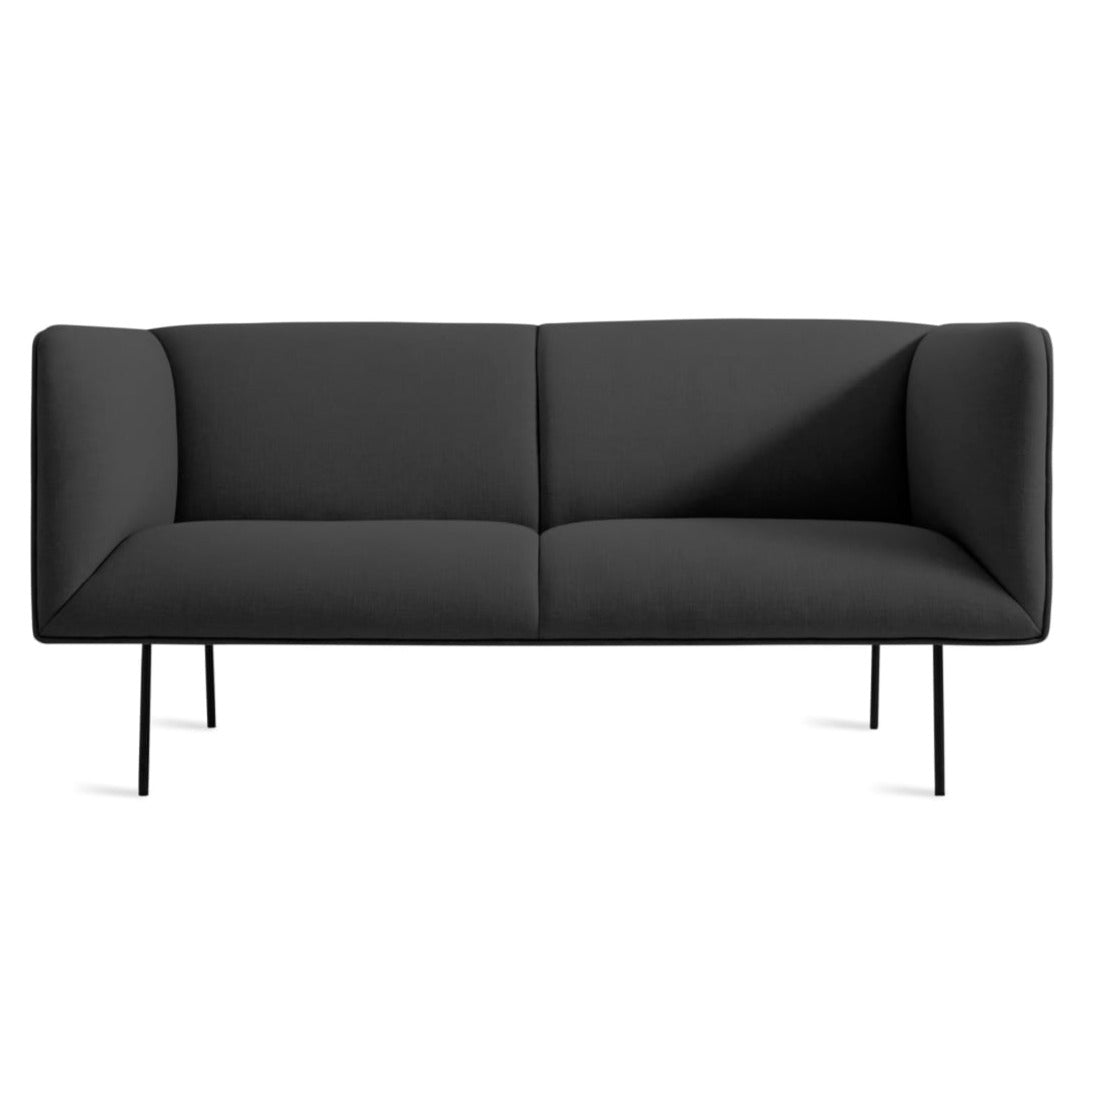 Dandy 70" Sofa